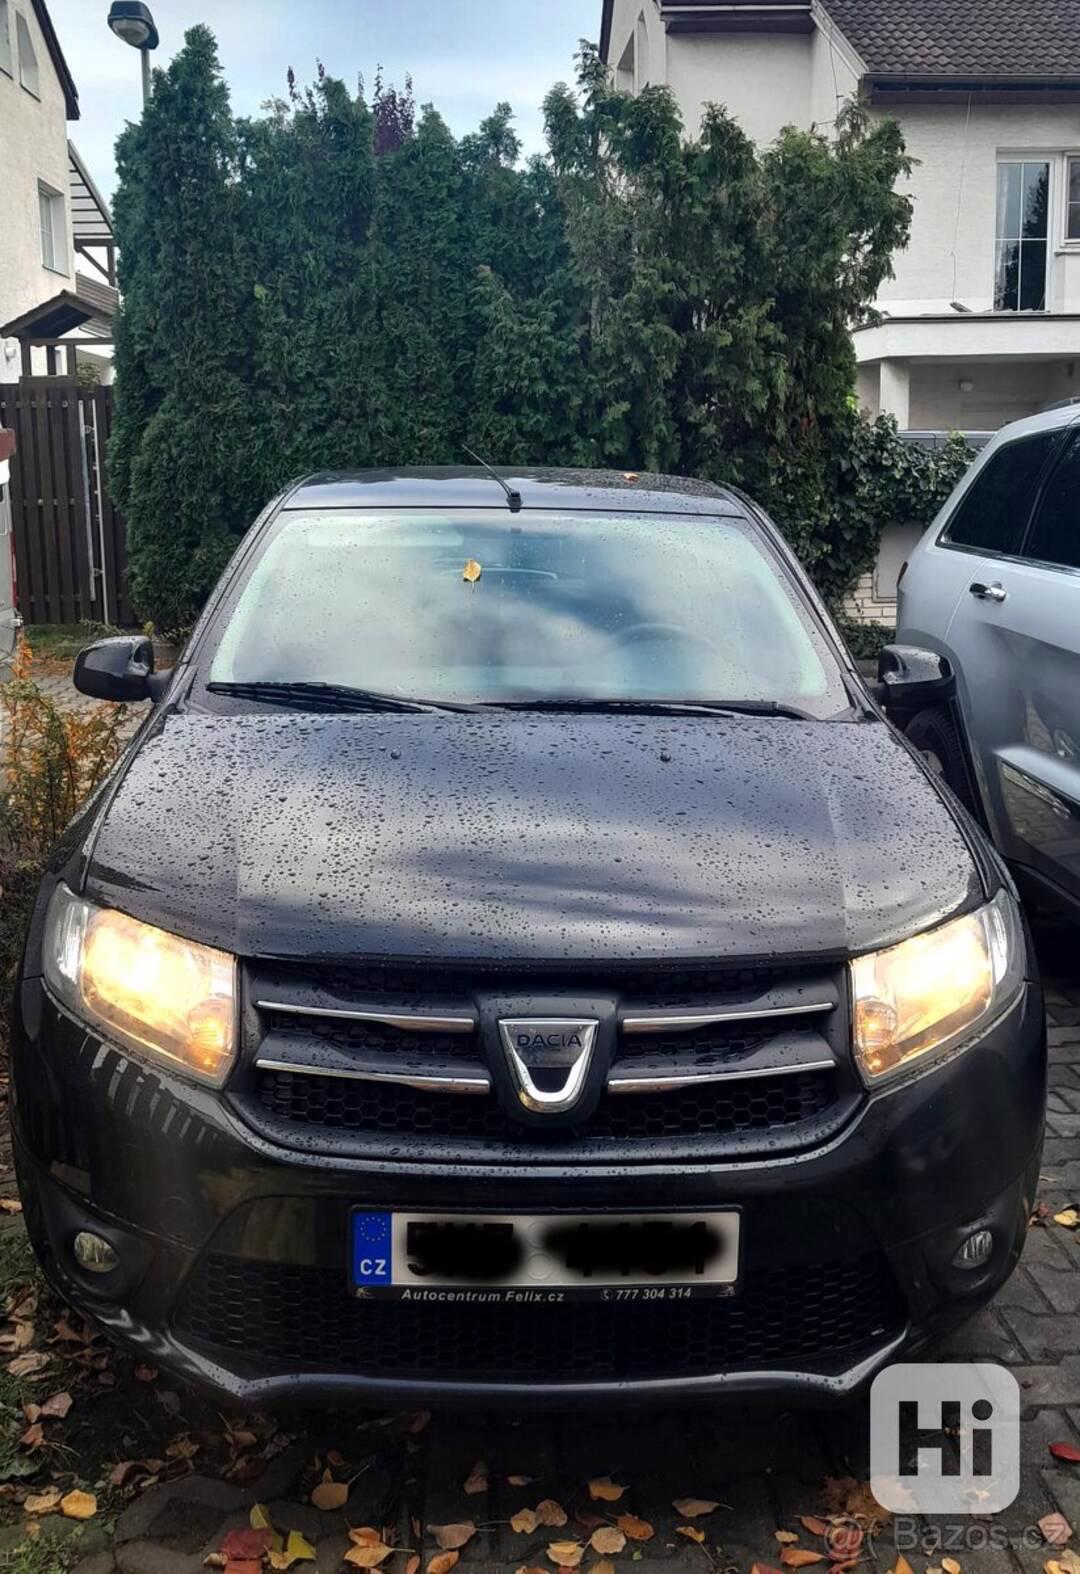 Dacia Sandero 1.2, rok výroby 2014 - foto 1